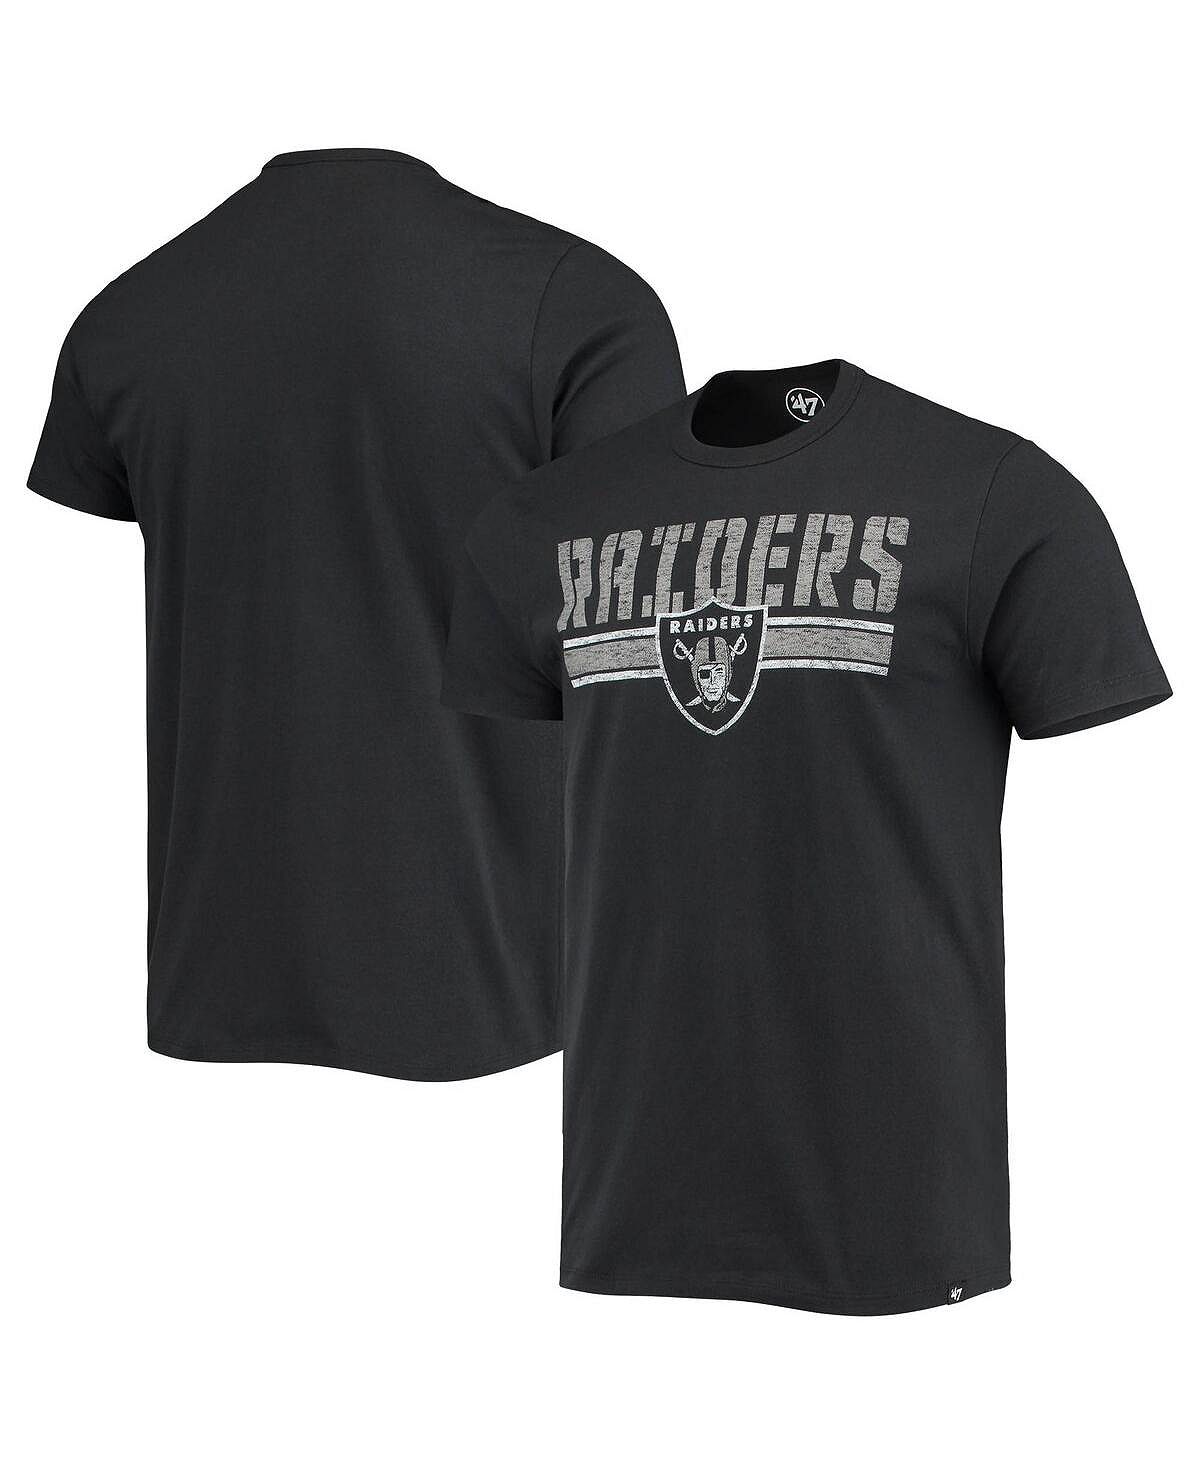 мужская серо черная футболка с капюшоном las vegas raiders franklin wooster с длинными рукавами и меланжевым принтом 47 brand мульти Мужская черная футболка в полоску с командой Las Vegas Raiders '47 Brand